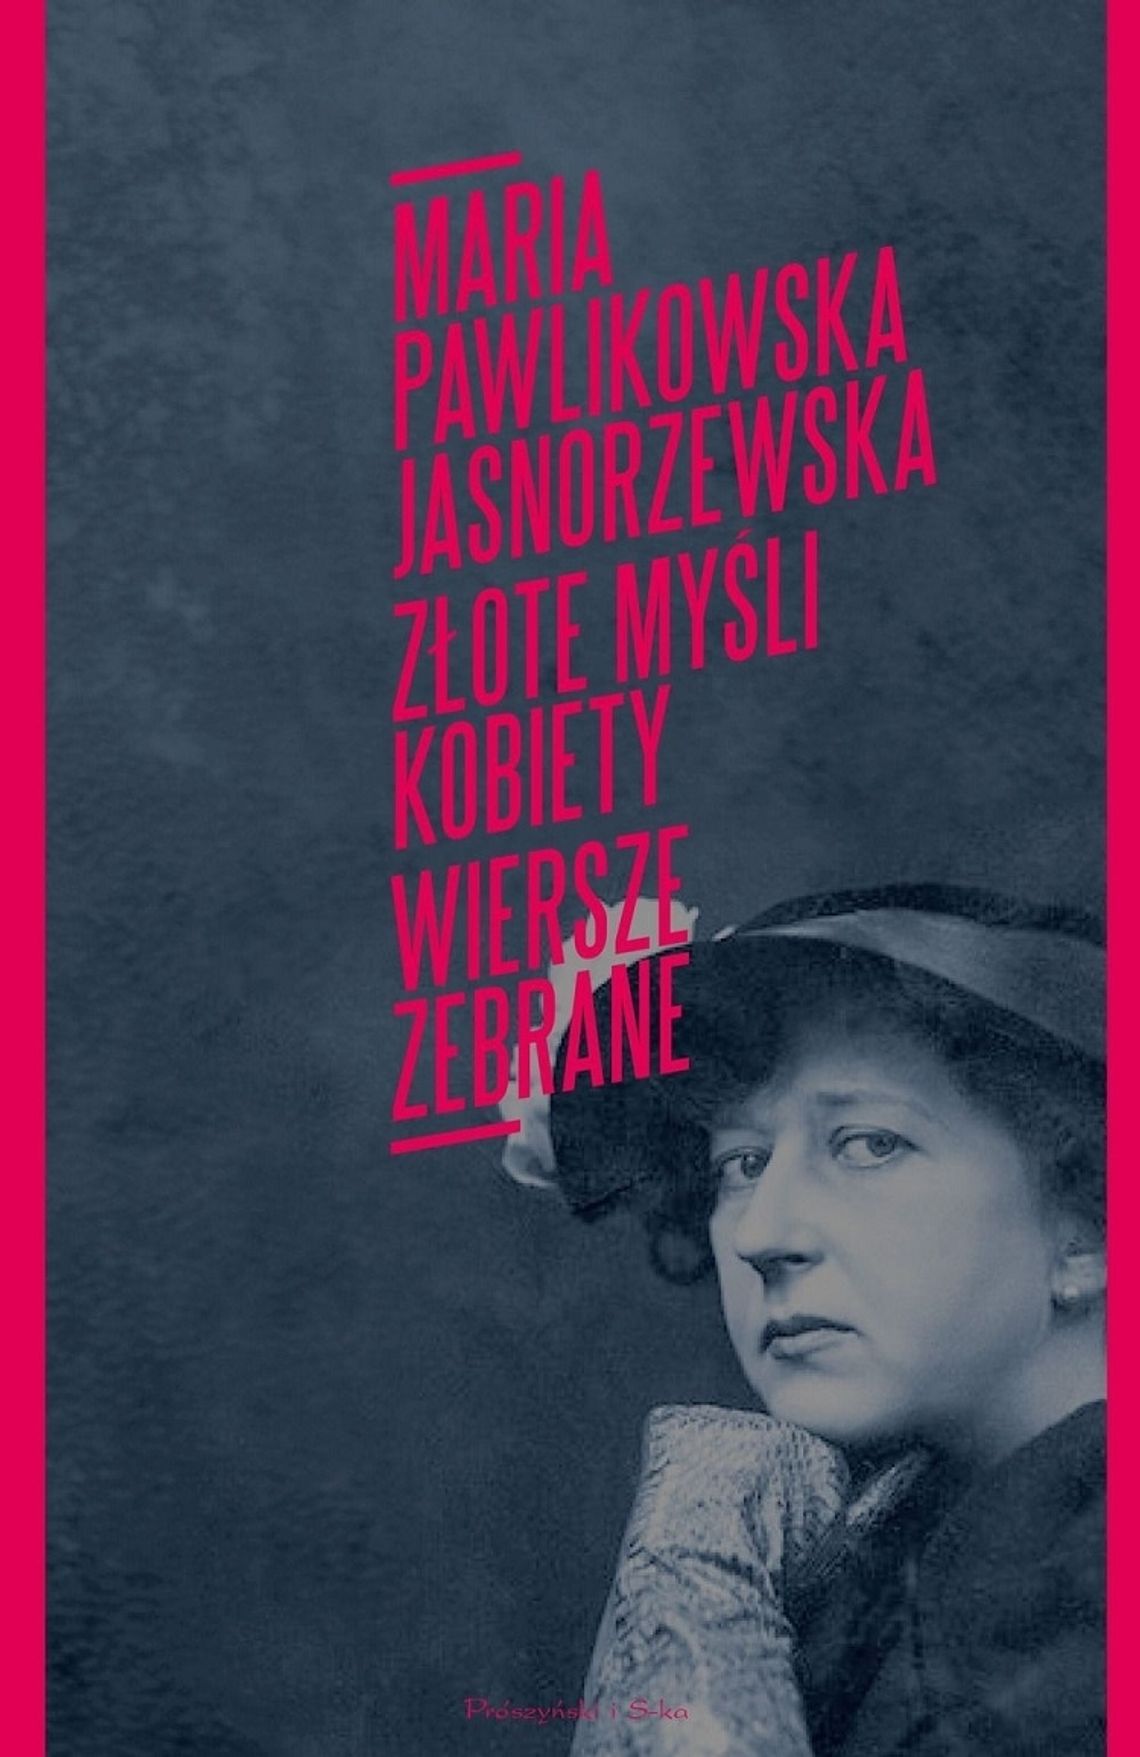 Maria Pawlikowska-Jasnorzewska "Złote myśli kobiety. Wiersze zebrane"; wyd. Prószyński i S-ka